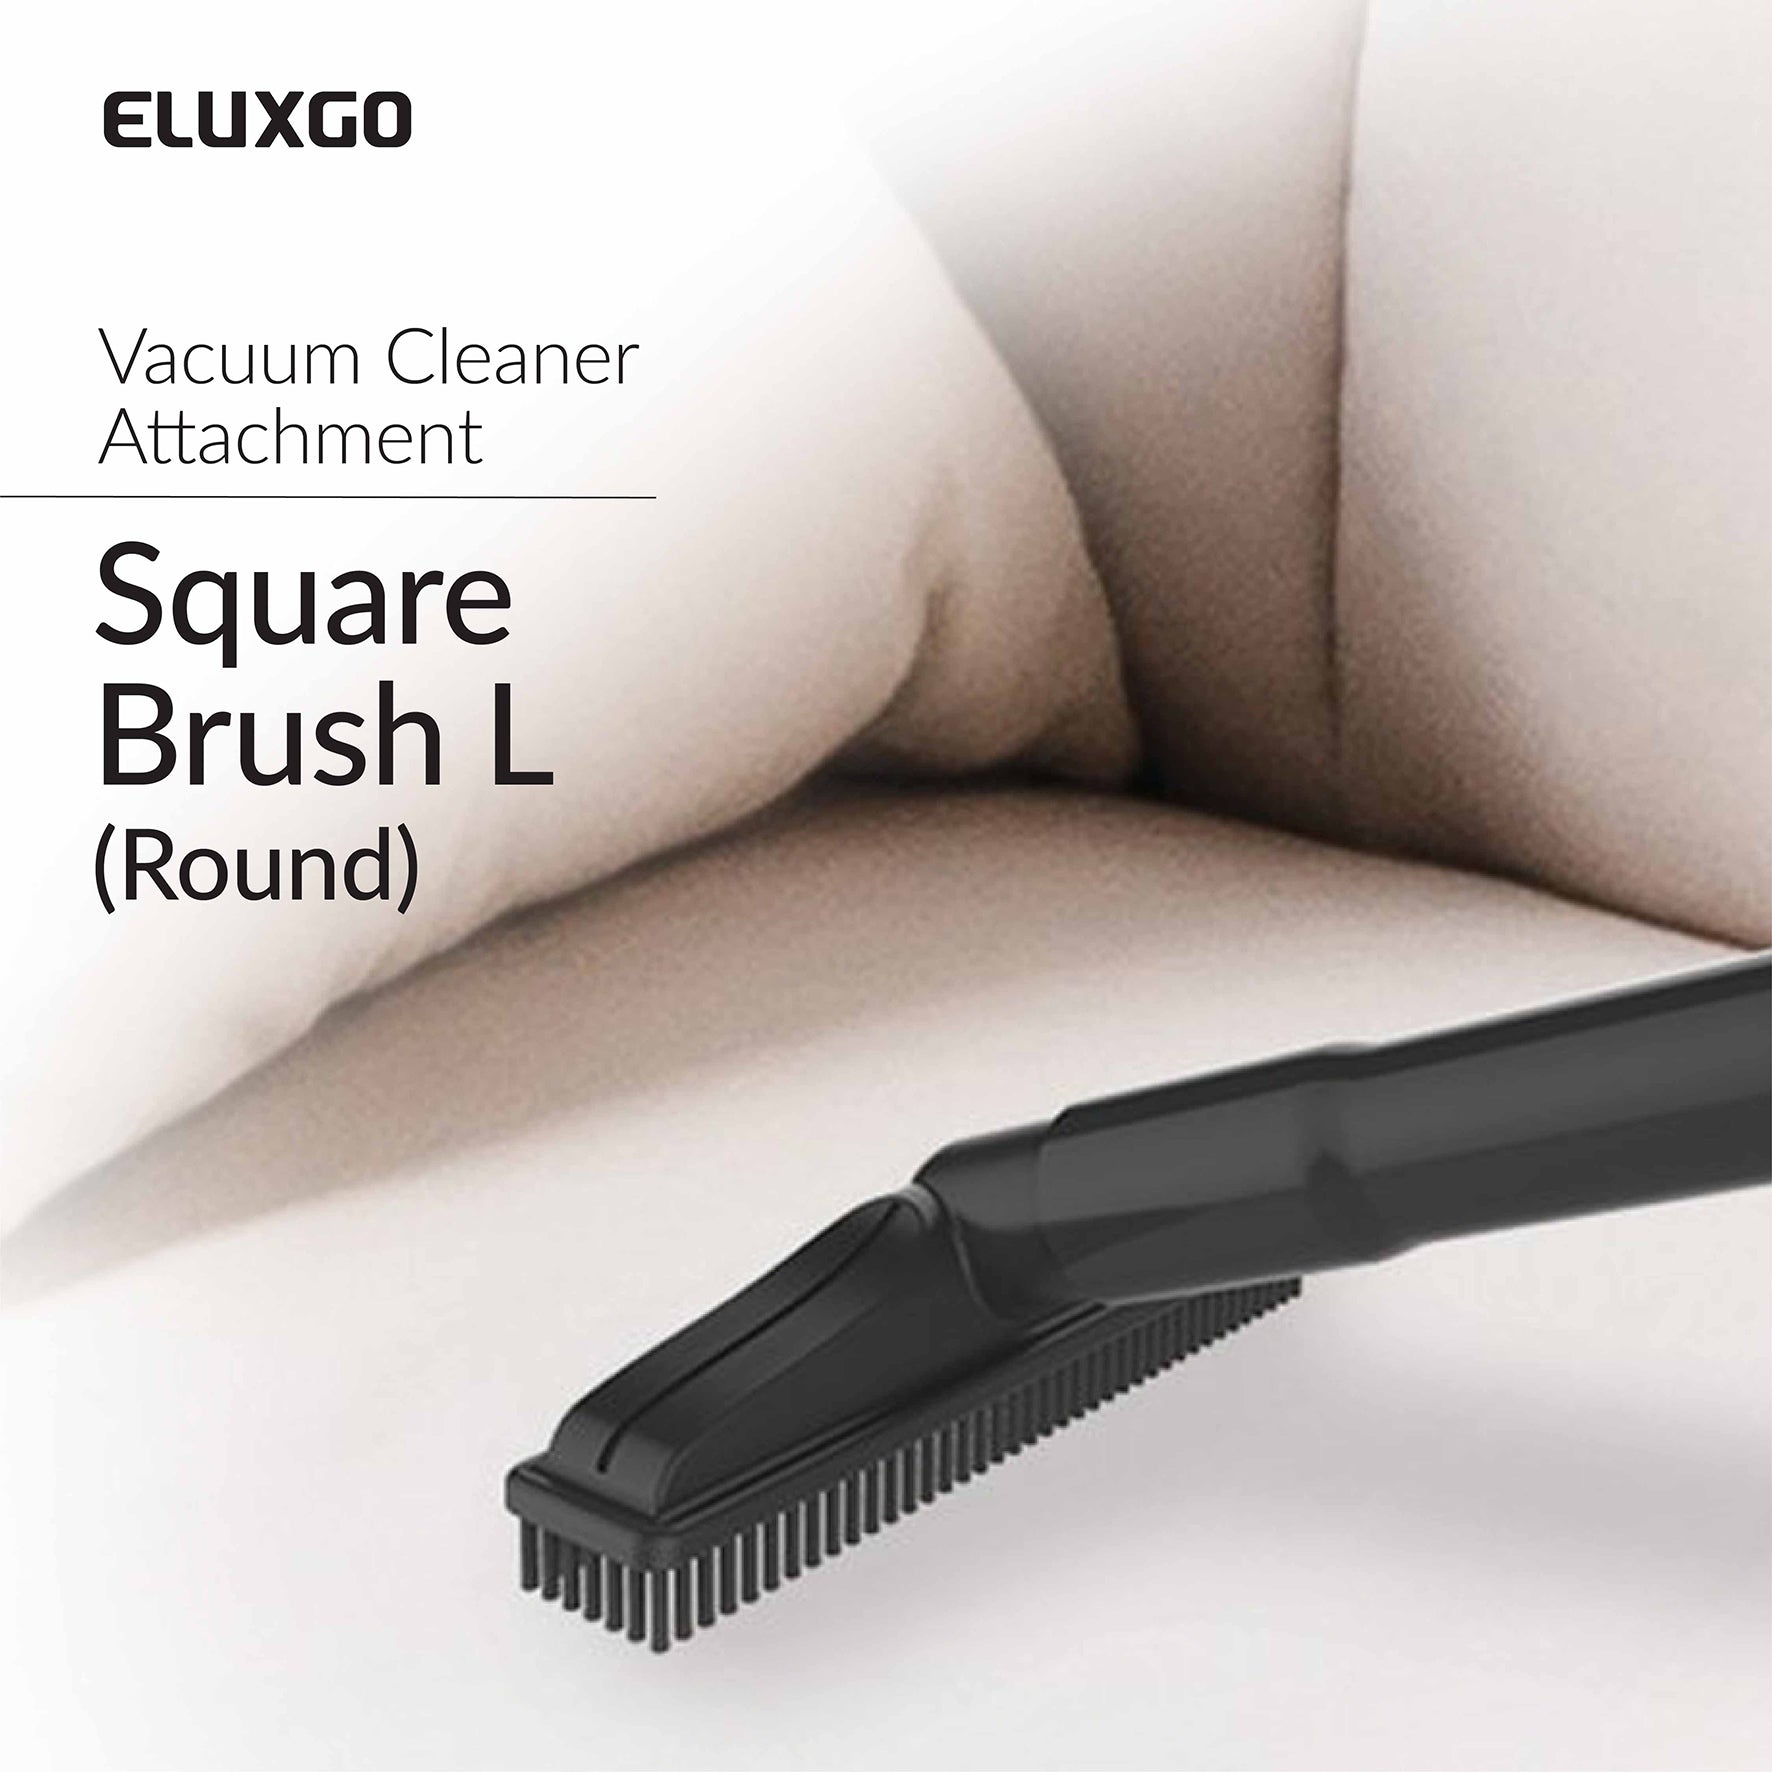 Eluxgo vacuum cleaner square brush sweeps up dirt and debris